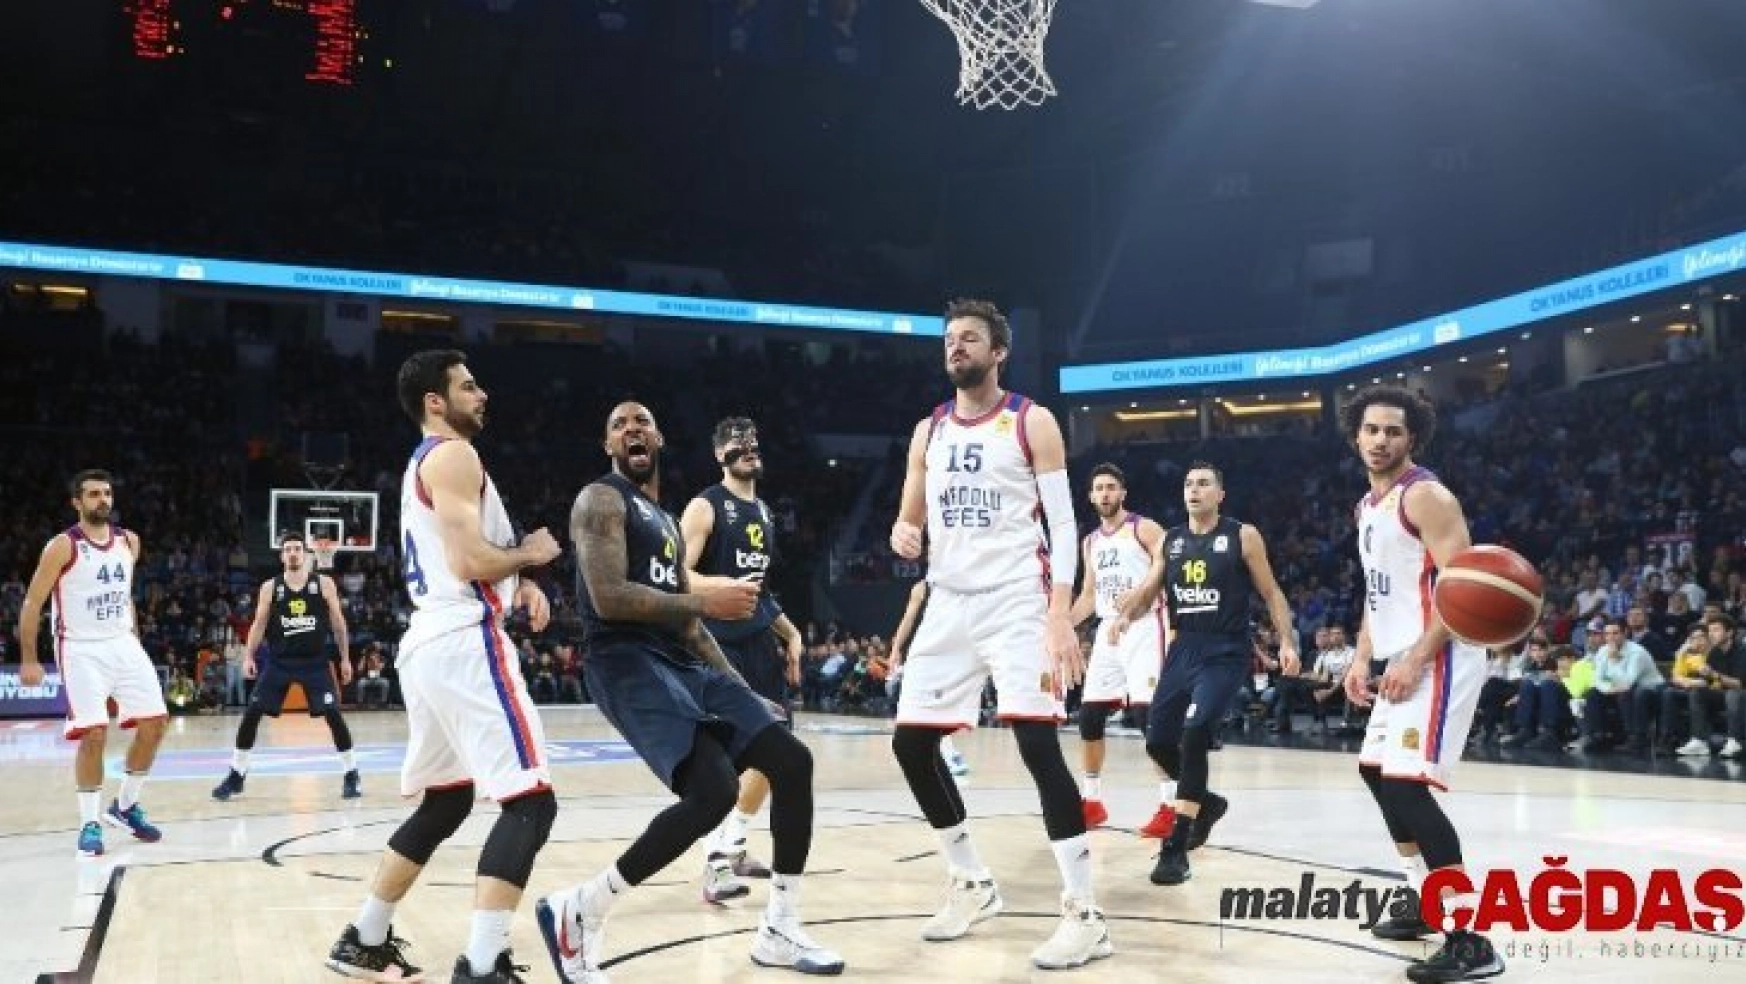 ING Basketbol Süper Lig: Anadolu Efes: 79 - Fenerbahçe Beko: 66